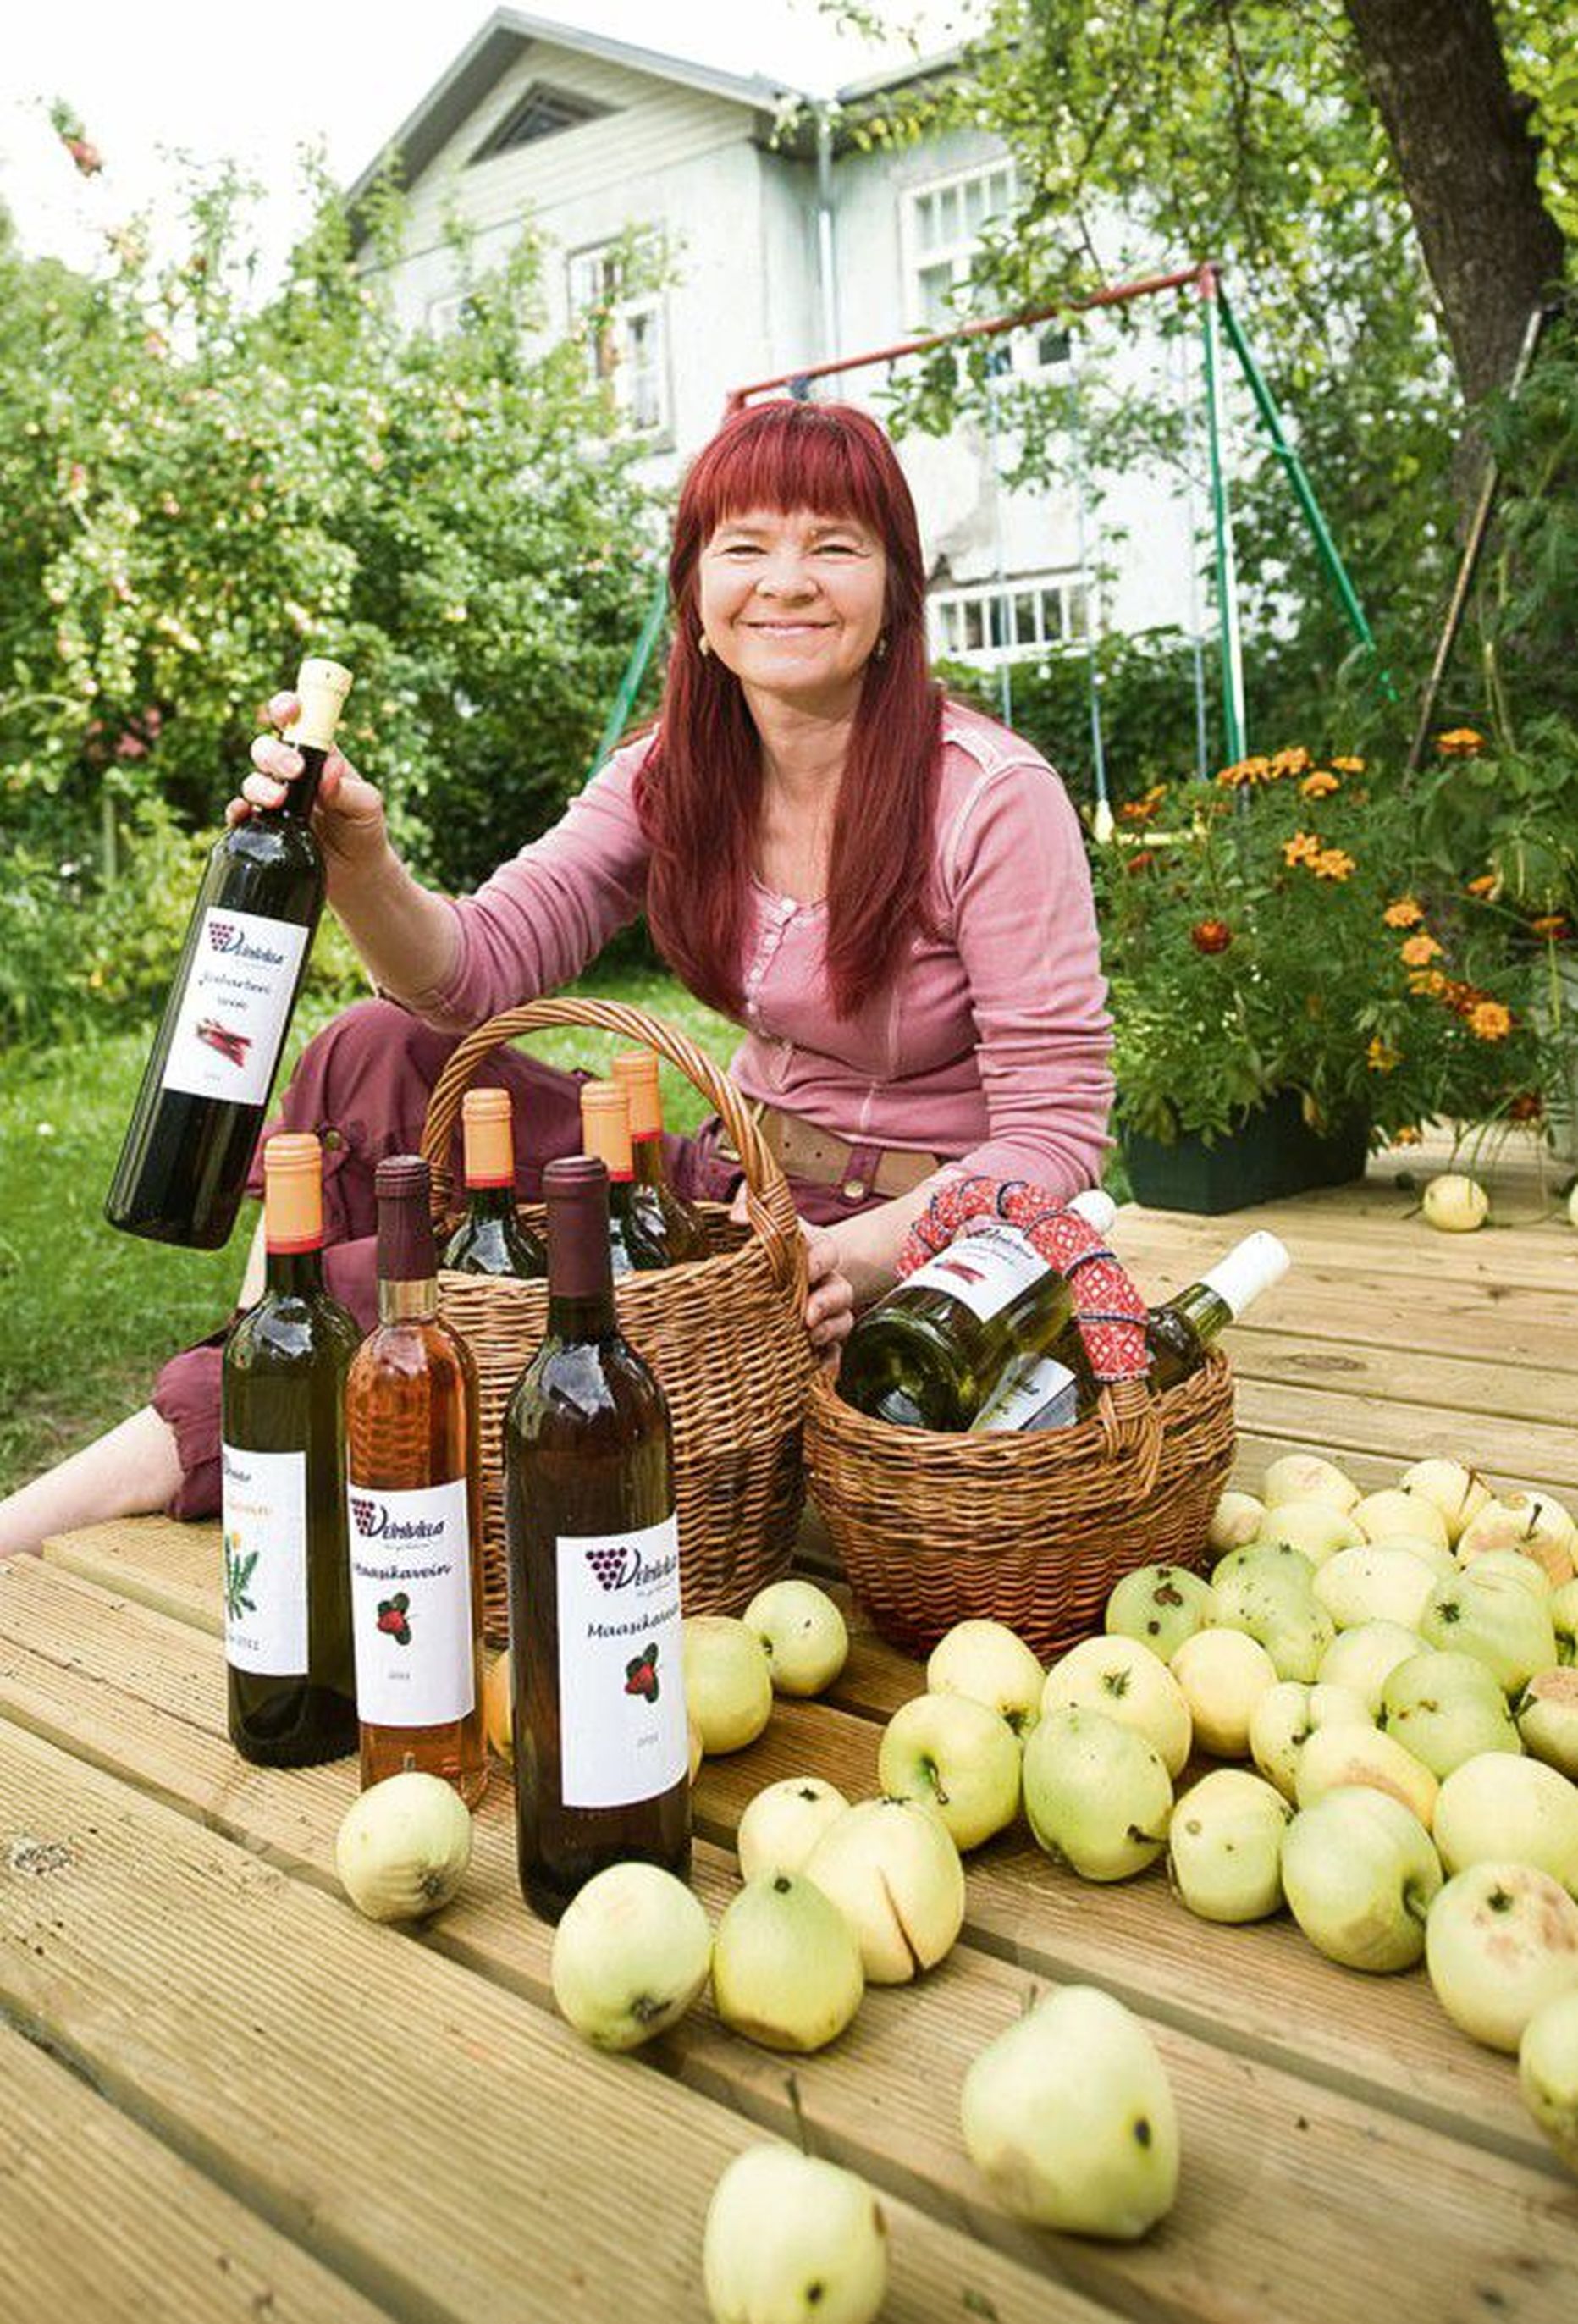 Rõõmustab veinisaagi üle: Tiina Kuuler näitab koduõuel valikut sel suvel pudelisse pandud     veinidest – võilillest, maasikast, rabarberist.